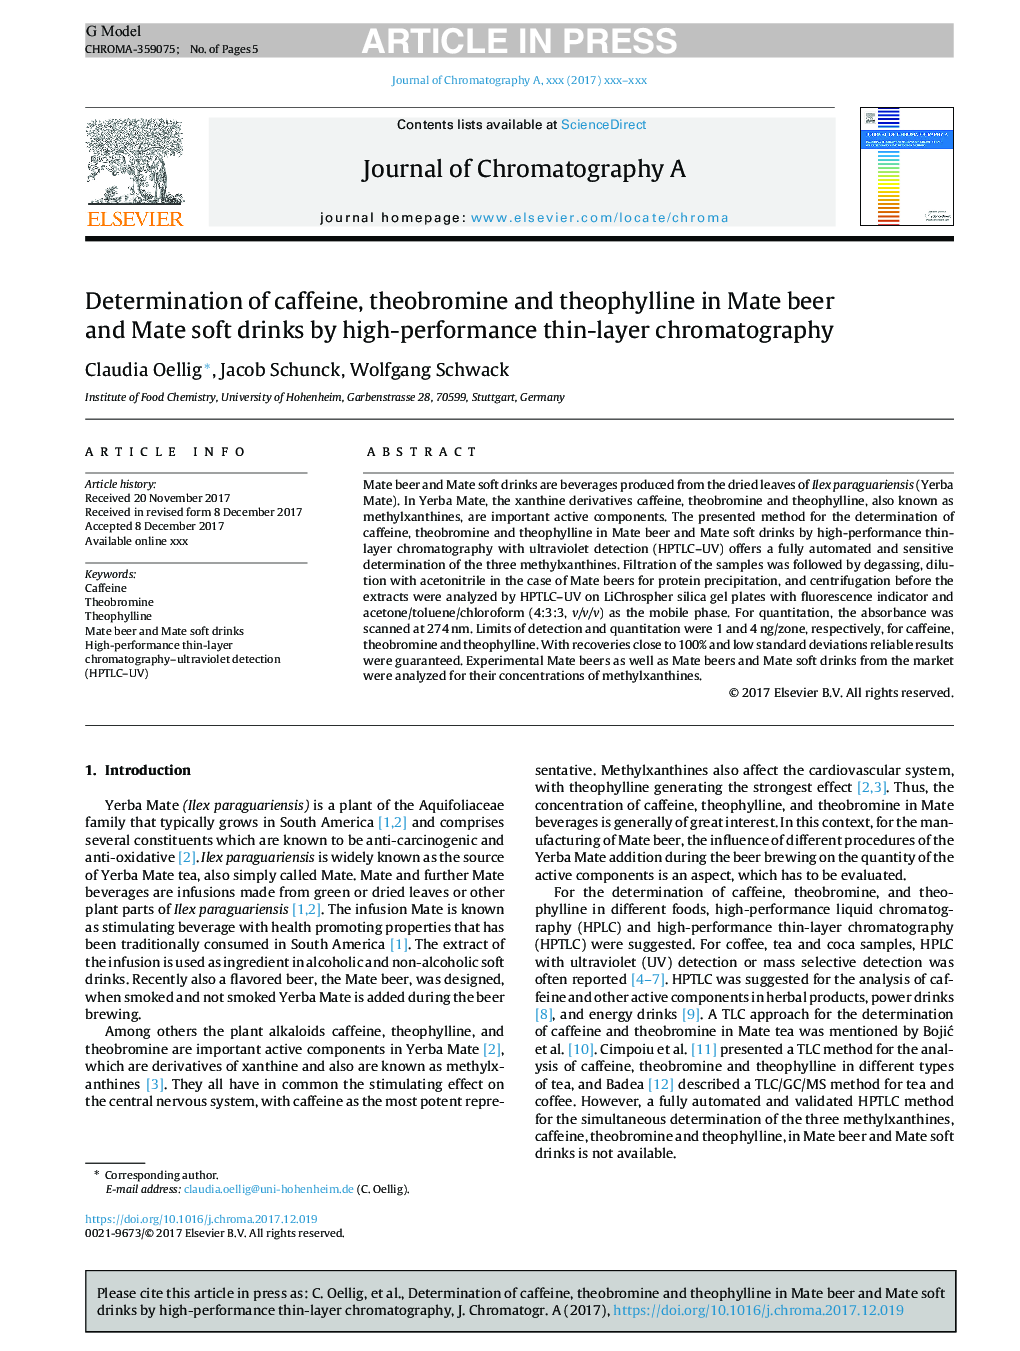 تعیین کافئین، تئوباریم و تئوفیلین در نوشابه های ماته و نوشابه های مات با استفاده از کروماتوگرافی نازک با عملکرد بالا 